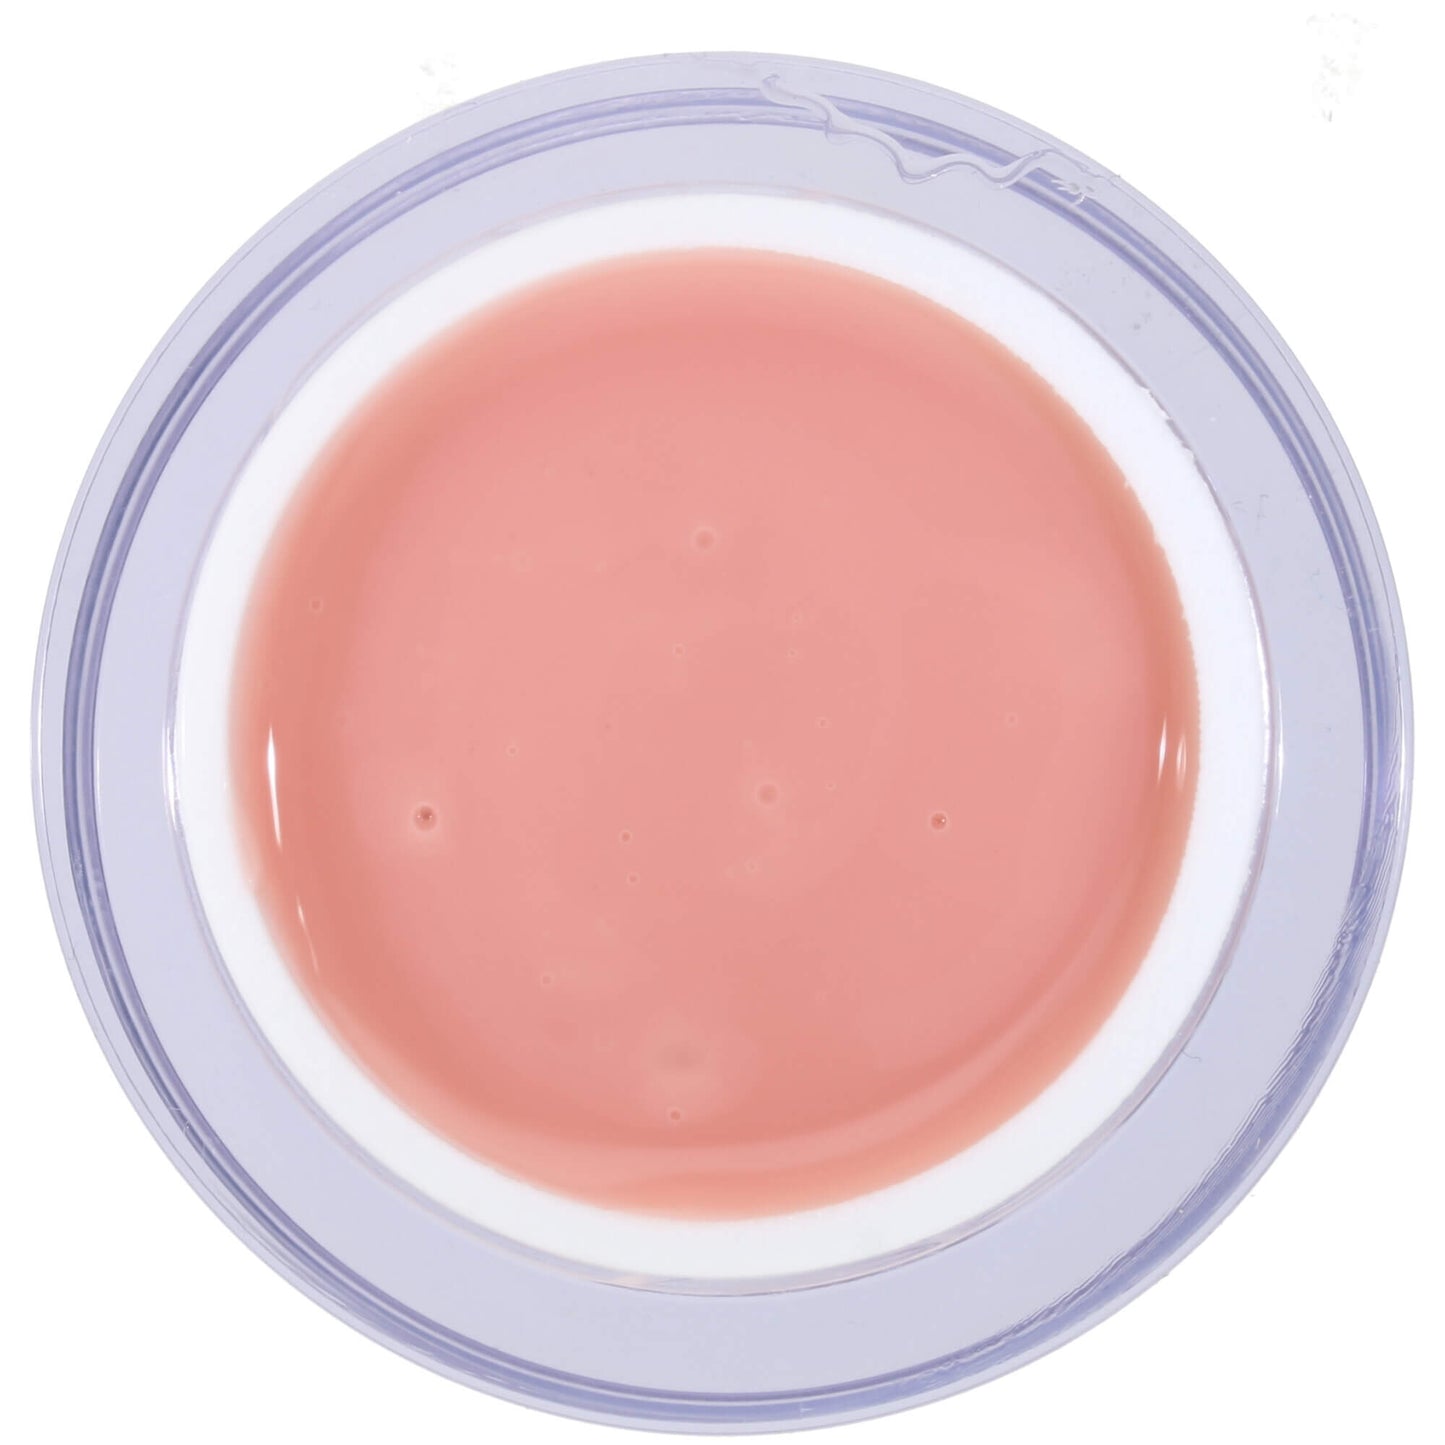 MSE 1-phase gel dusky pink / 1-phase dusky pink 5ml